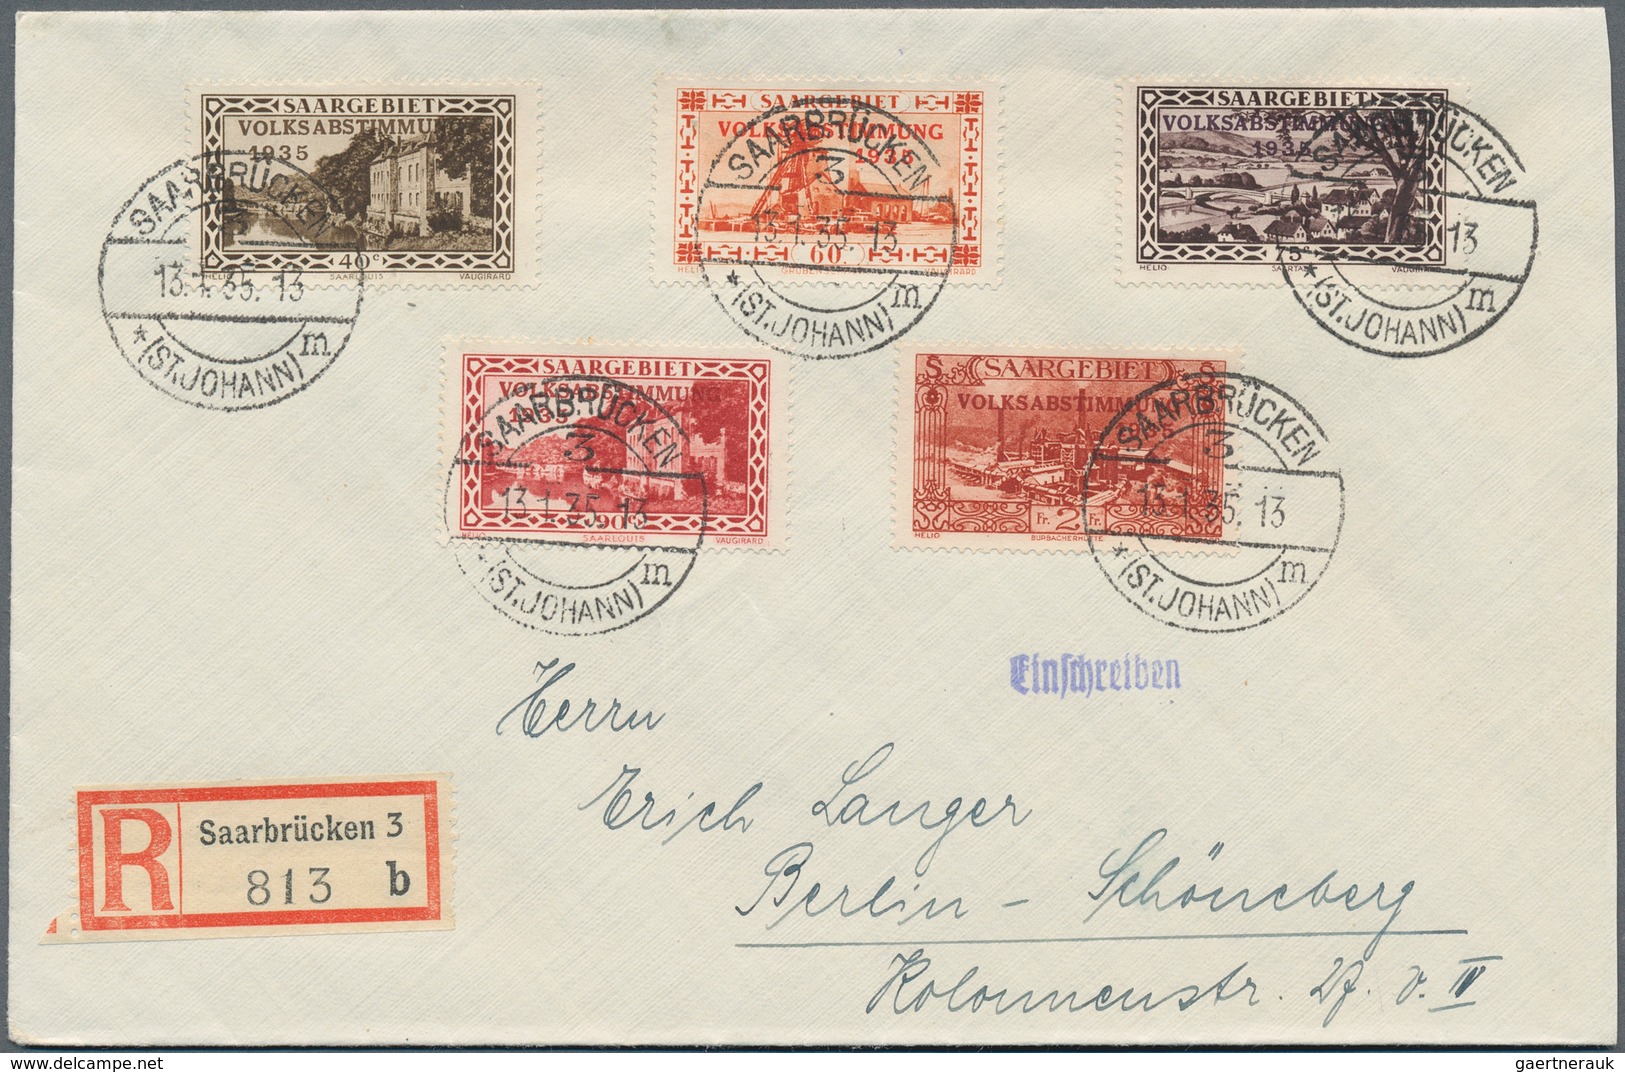 19027 Deutsche Abstimmungsgebiete: Saargebiet: 1934, Volksabstimmung auf 5 ausgesucht schönen Sieger R-Bri